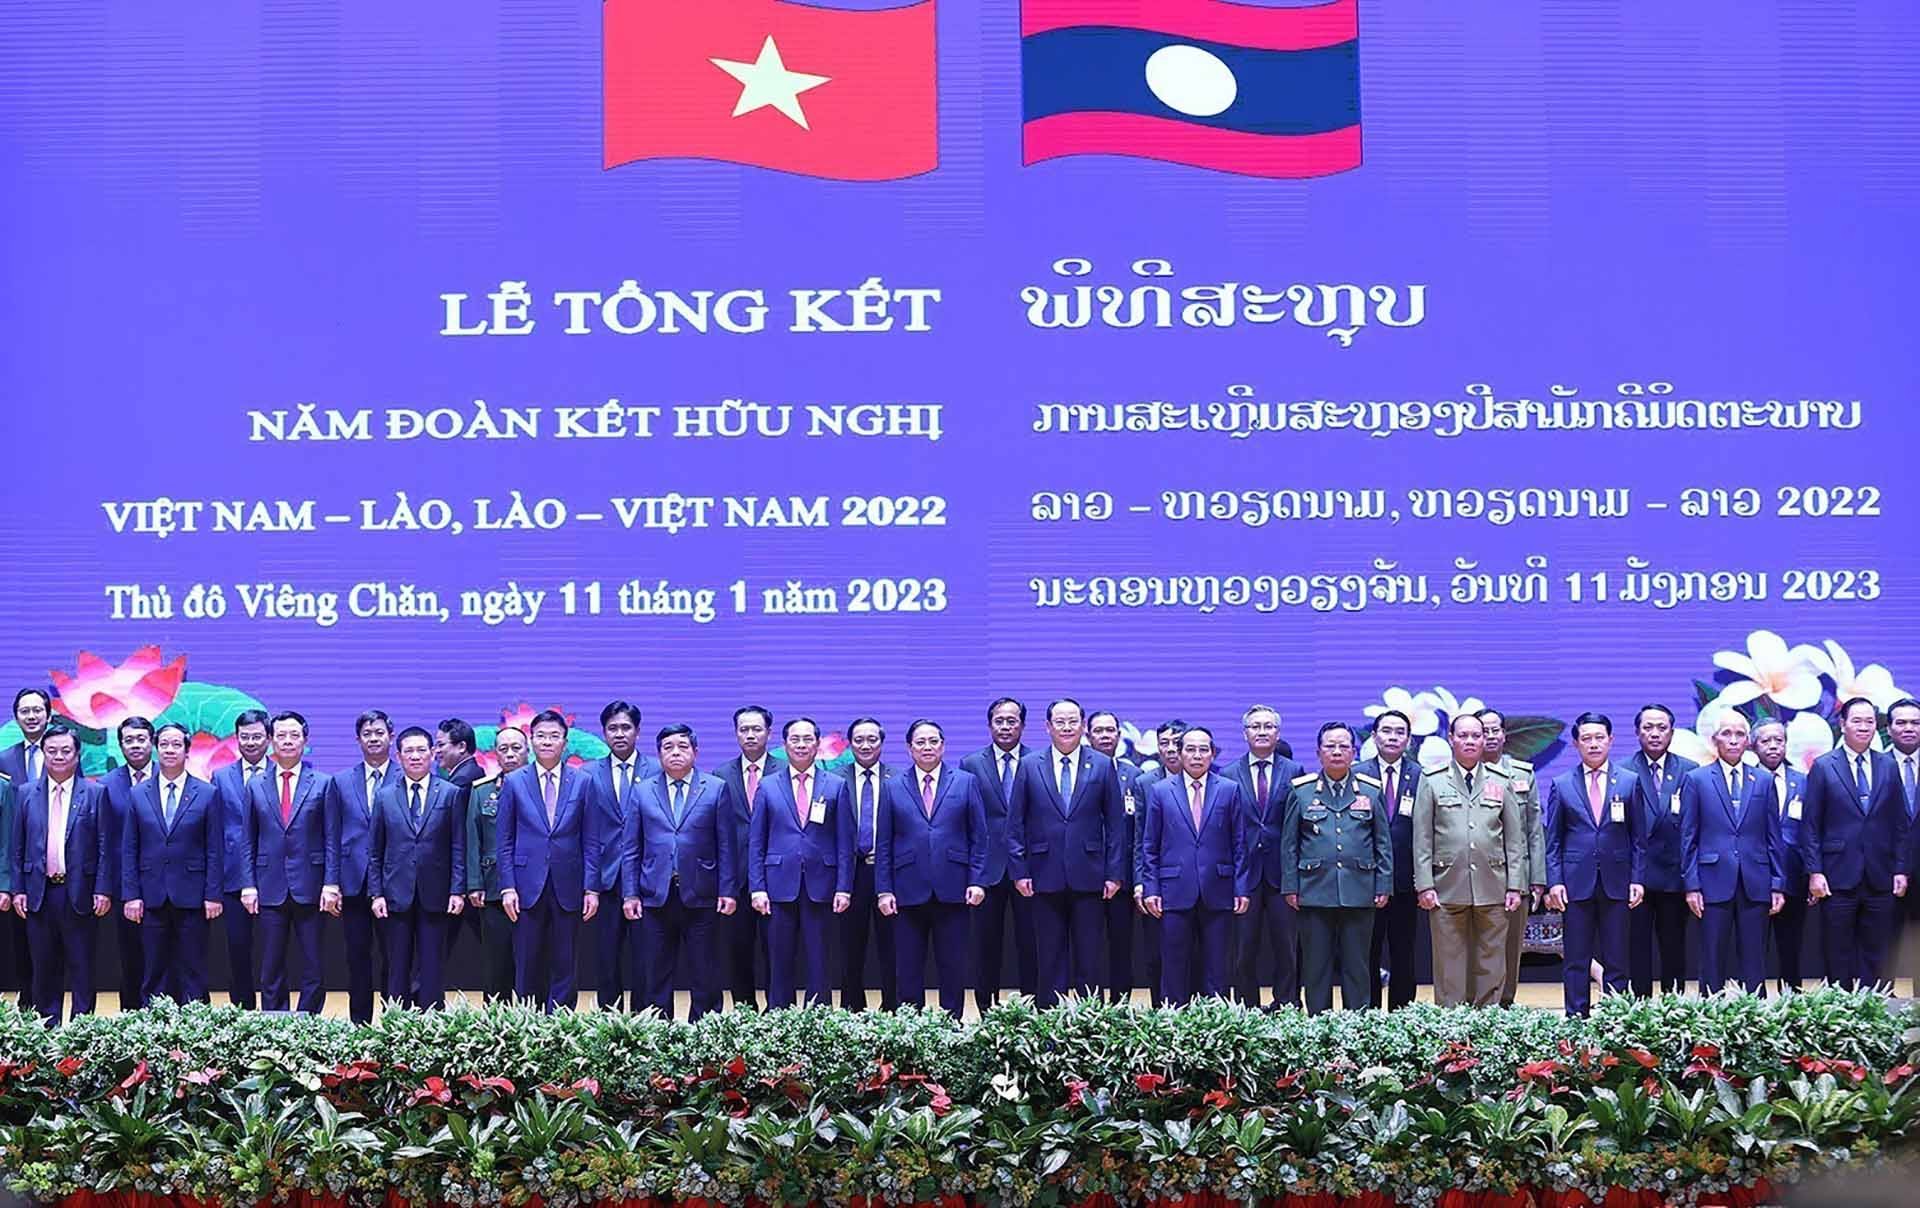 Thủ tướng Phạm Minh Chính và Thủ tướng Lào Sonexay Siphandone cùng các đại biểu tại Lễ tổng kết Năm đoàn kết hữu nghị Việt Nam-Lào, Lào-Việt Nam 2022. (Nguồn: TTXVN)